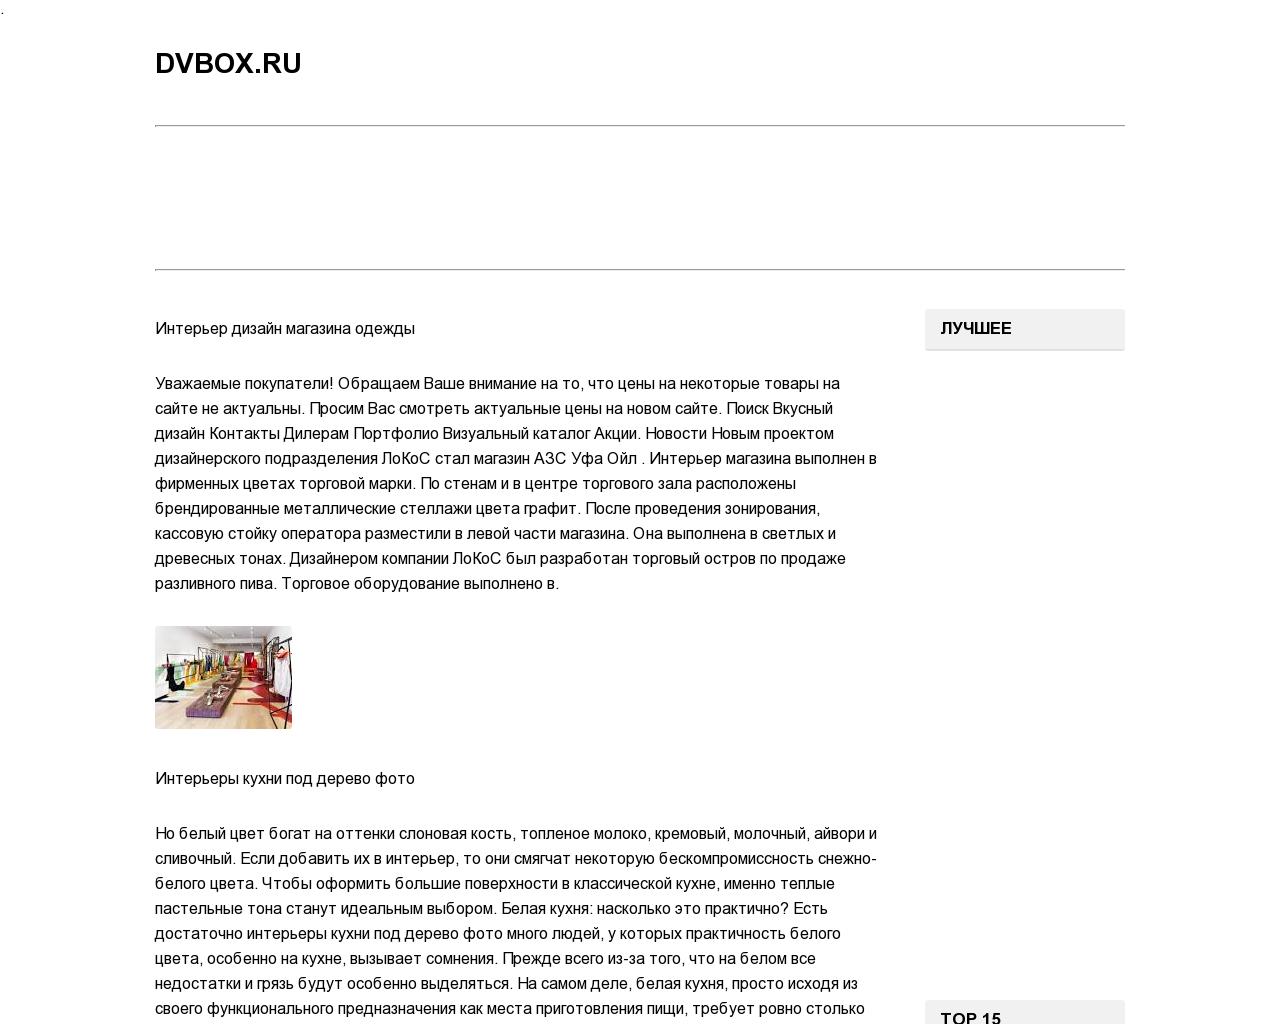 Изображение сайта dvbox.ru в разрешении 1280x1024